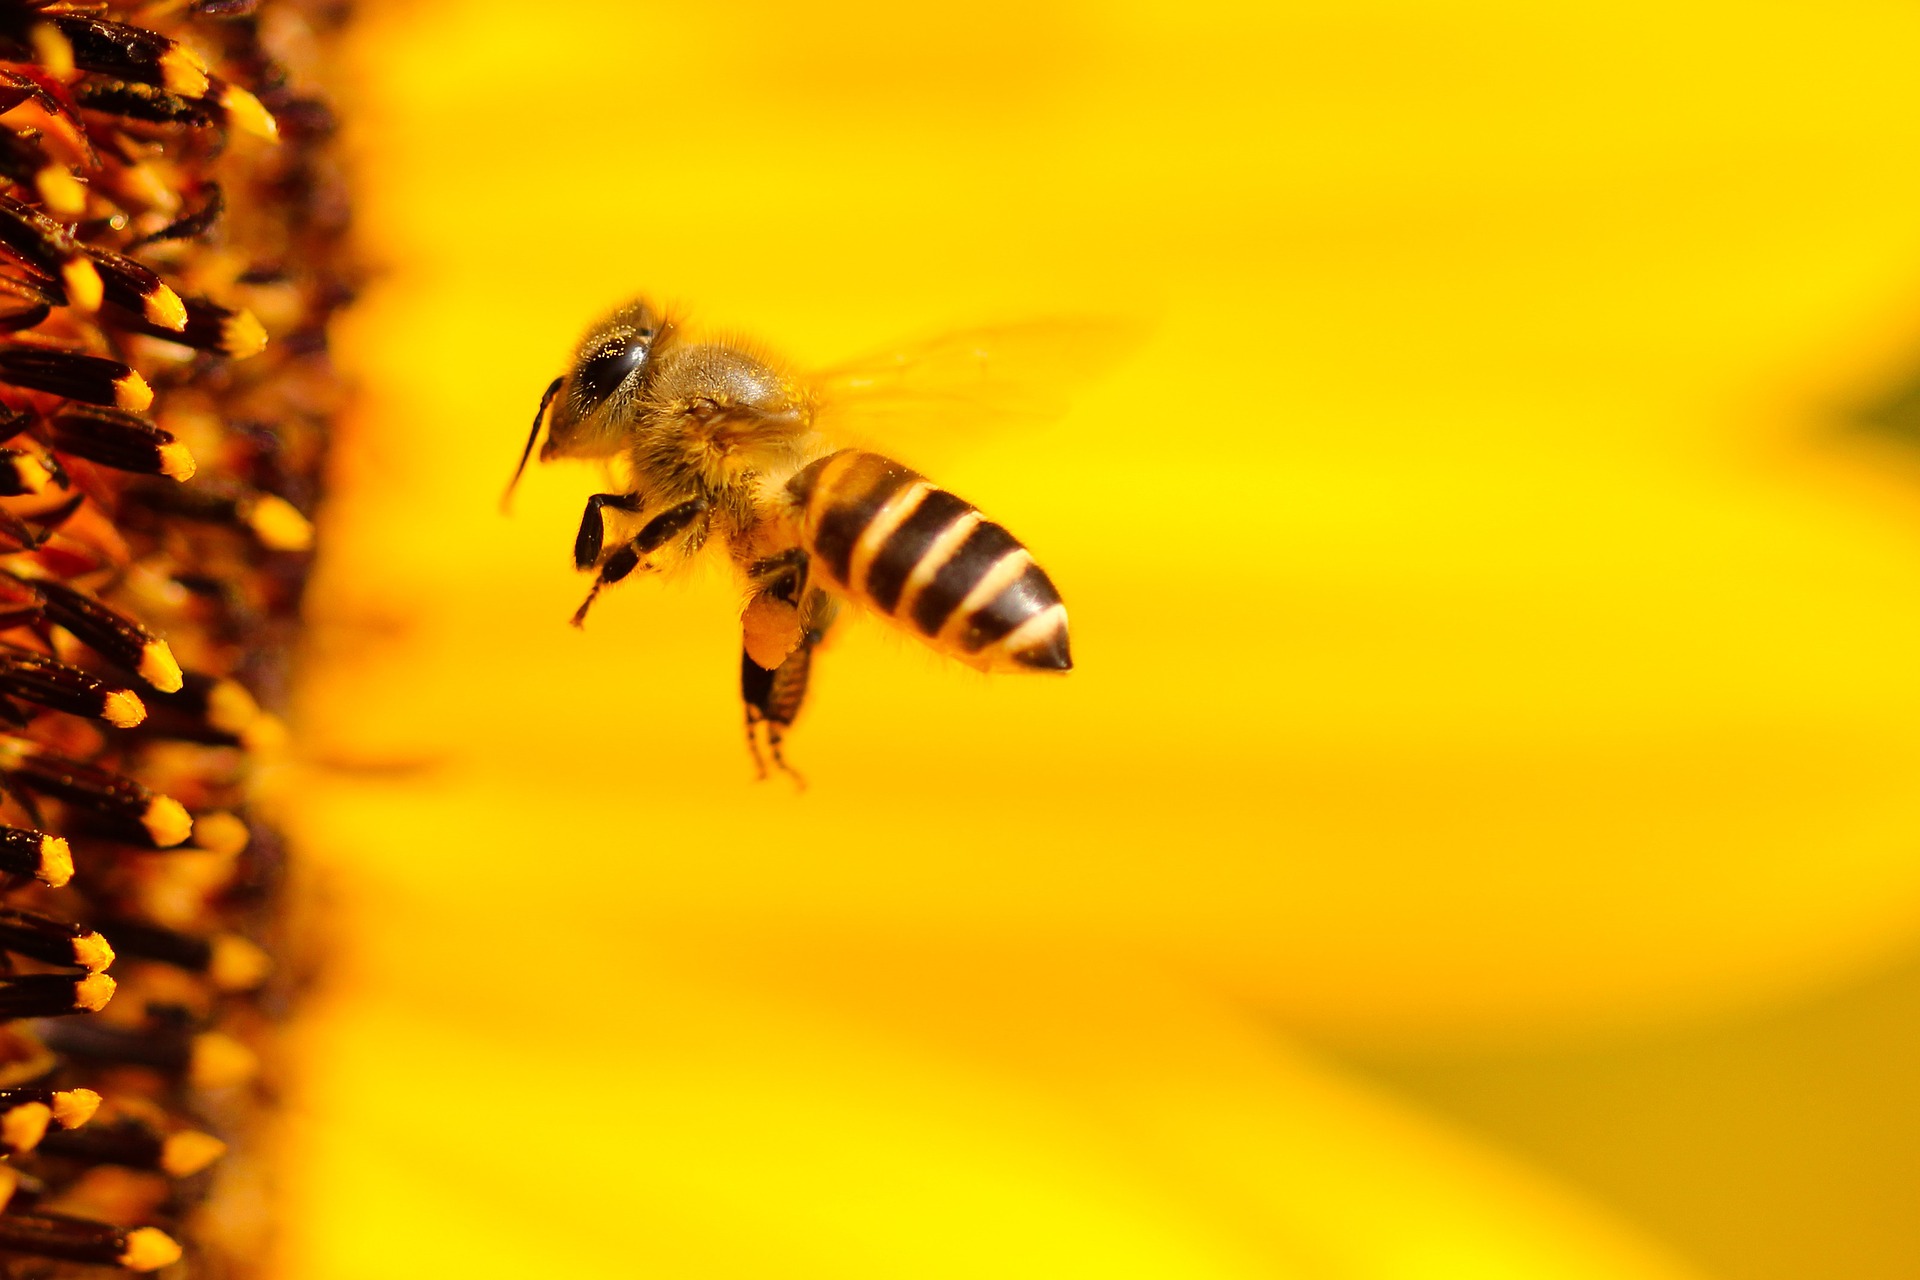 Protéger les abeilles